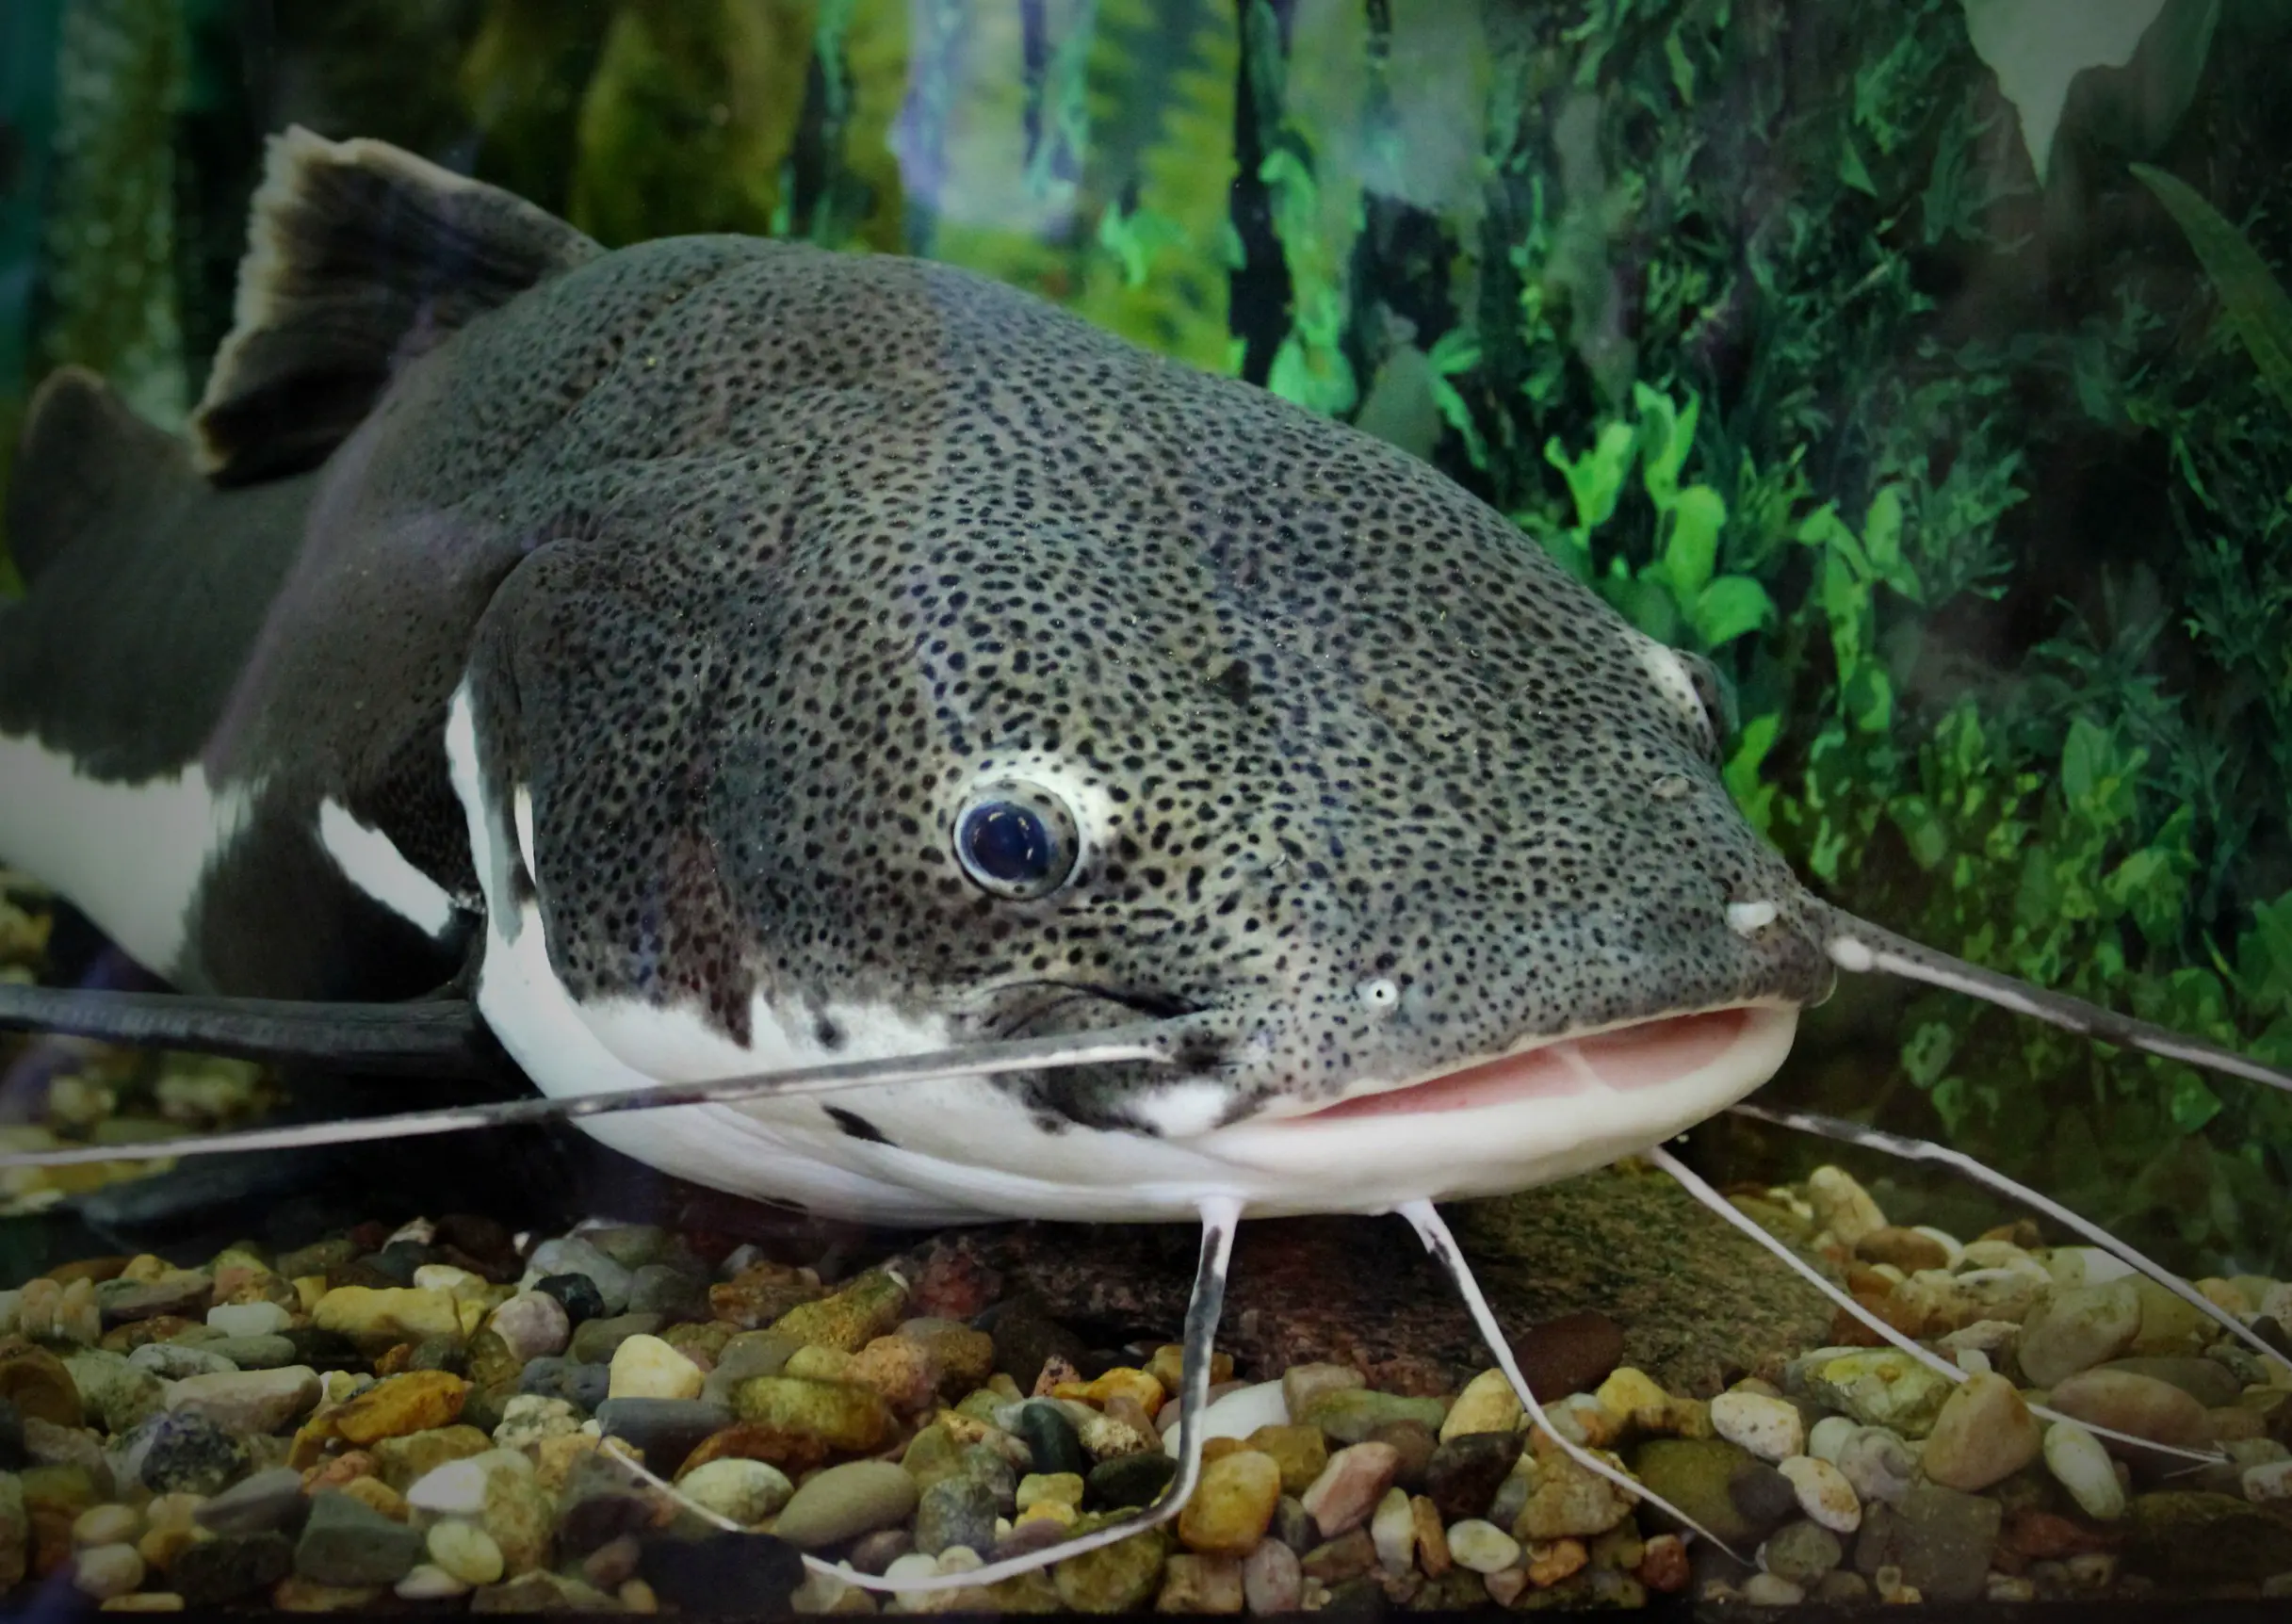 Closeup of a catfish